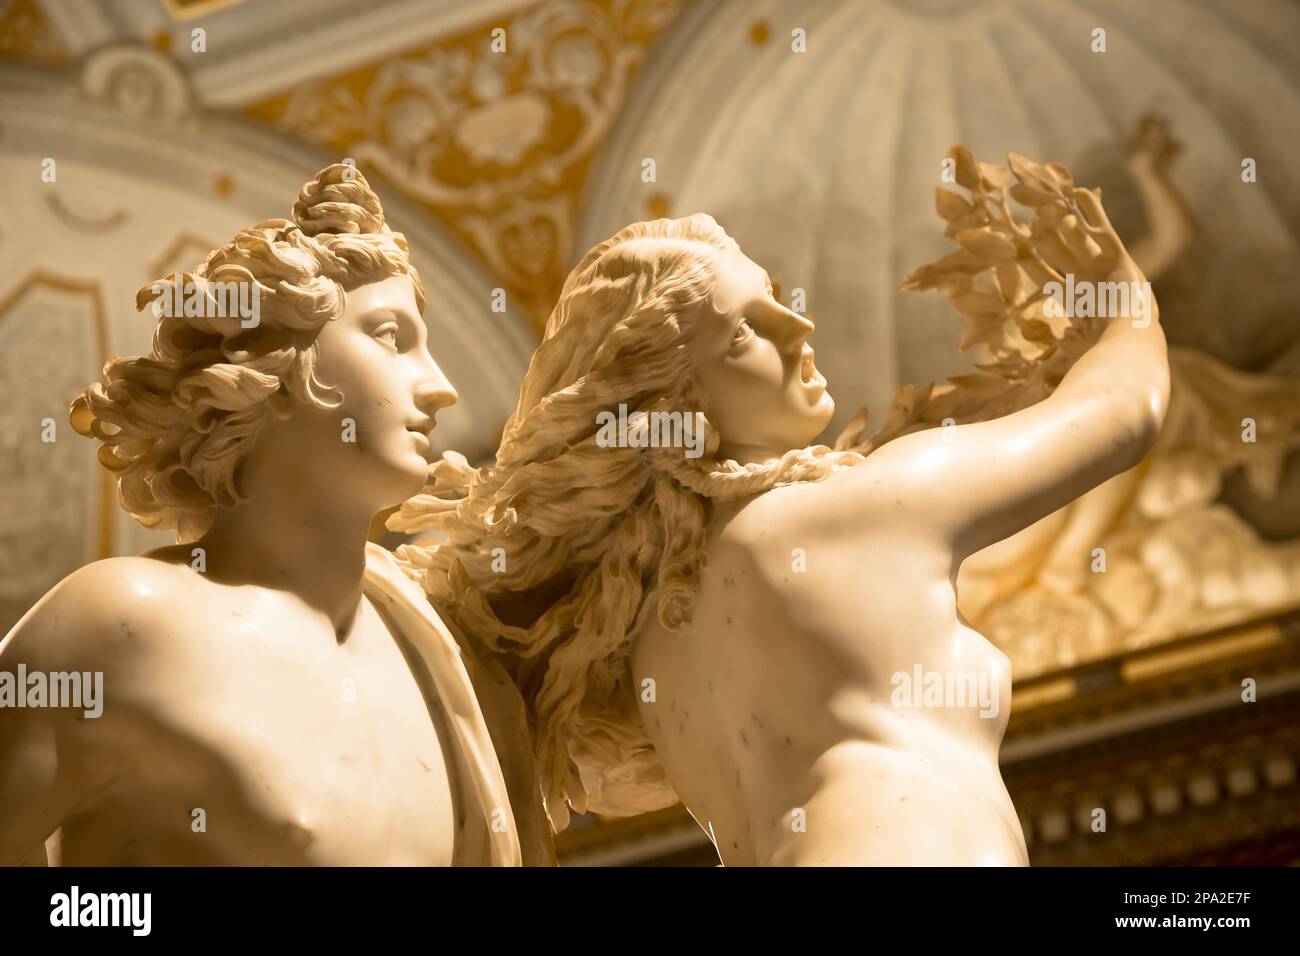 ROME, ITALIE - 24 août 2018 : Gian Lorenzo Bernini, chef-d'Apollo e Dafne, daté 1625 Banque D'Images